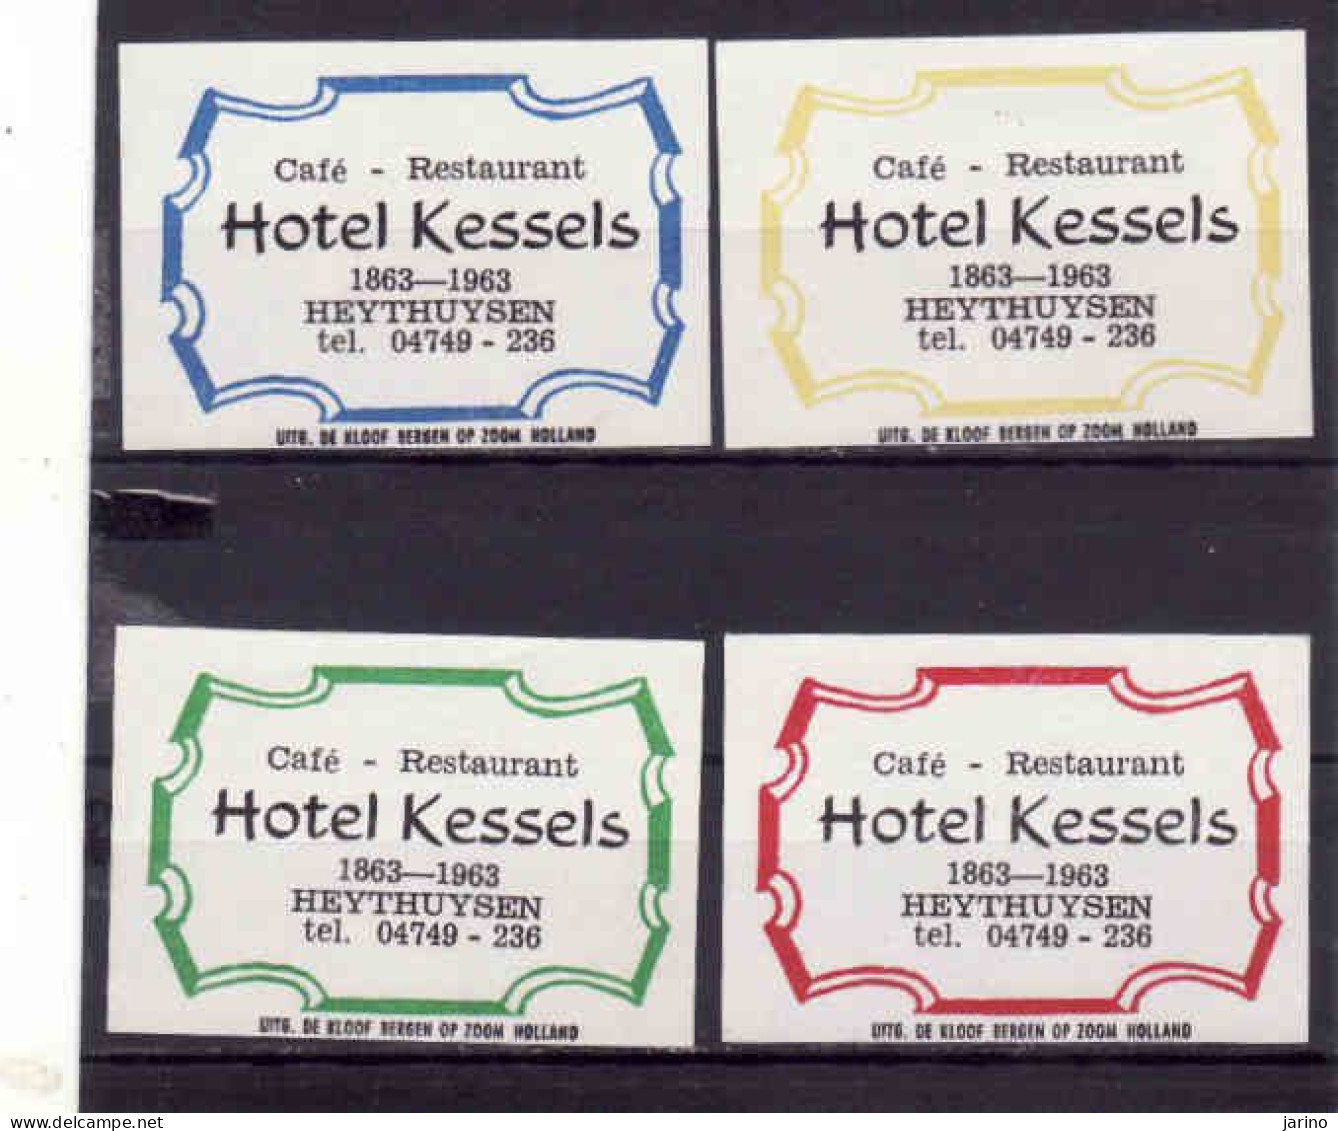 4 Dutch Matchbox Labels 1963, Heythuysen - Limburg, Café Restaurant Hotel Kessels, 1863 - 1963, Holland, Netherlands - Luciferdozen - Etiketten